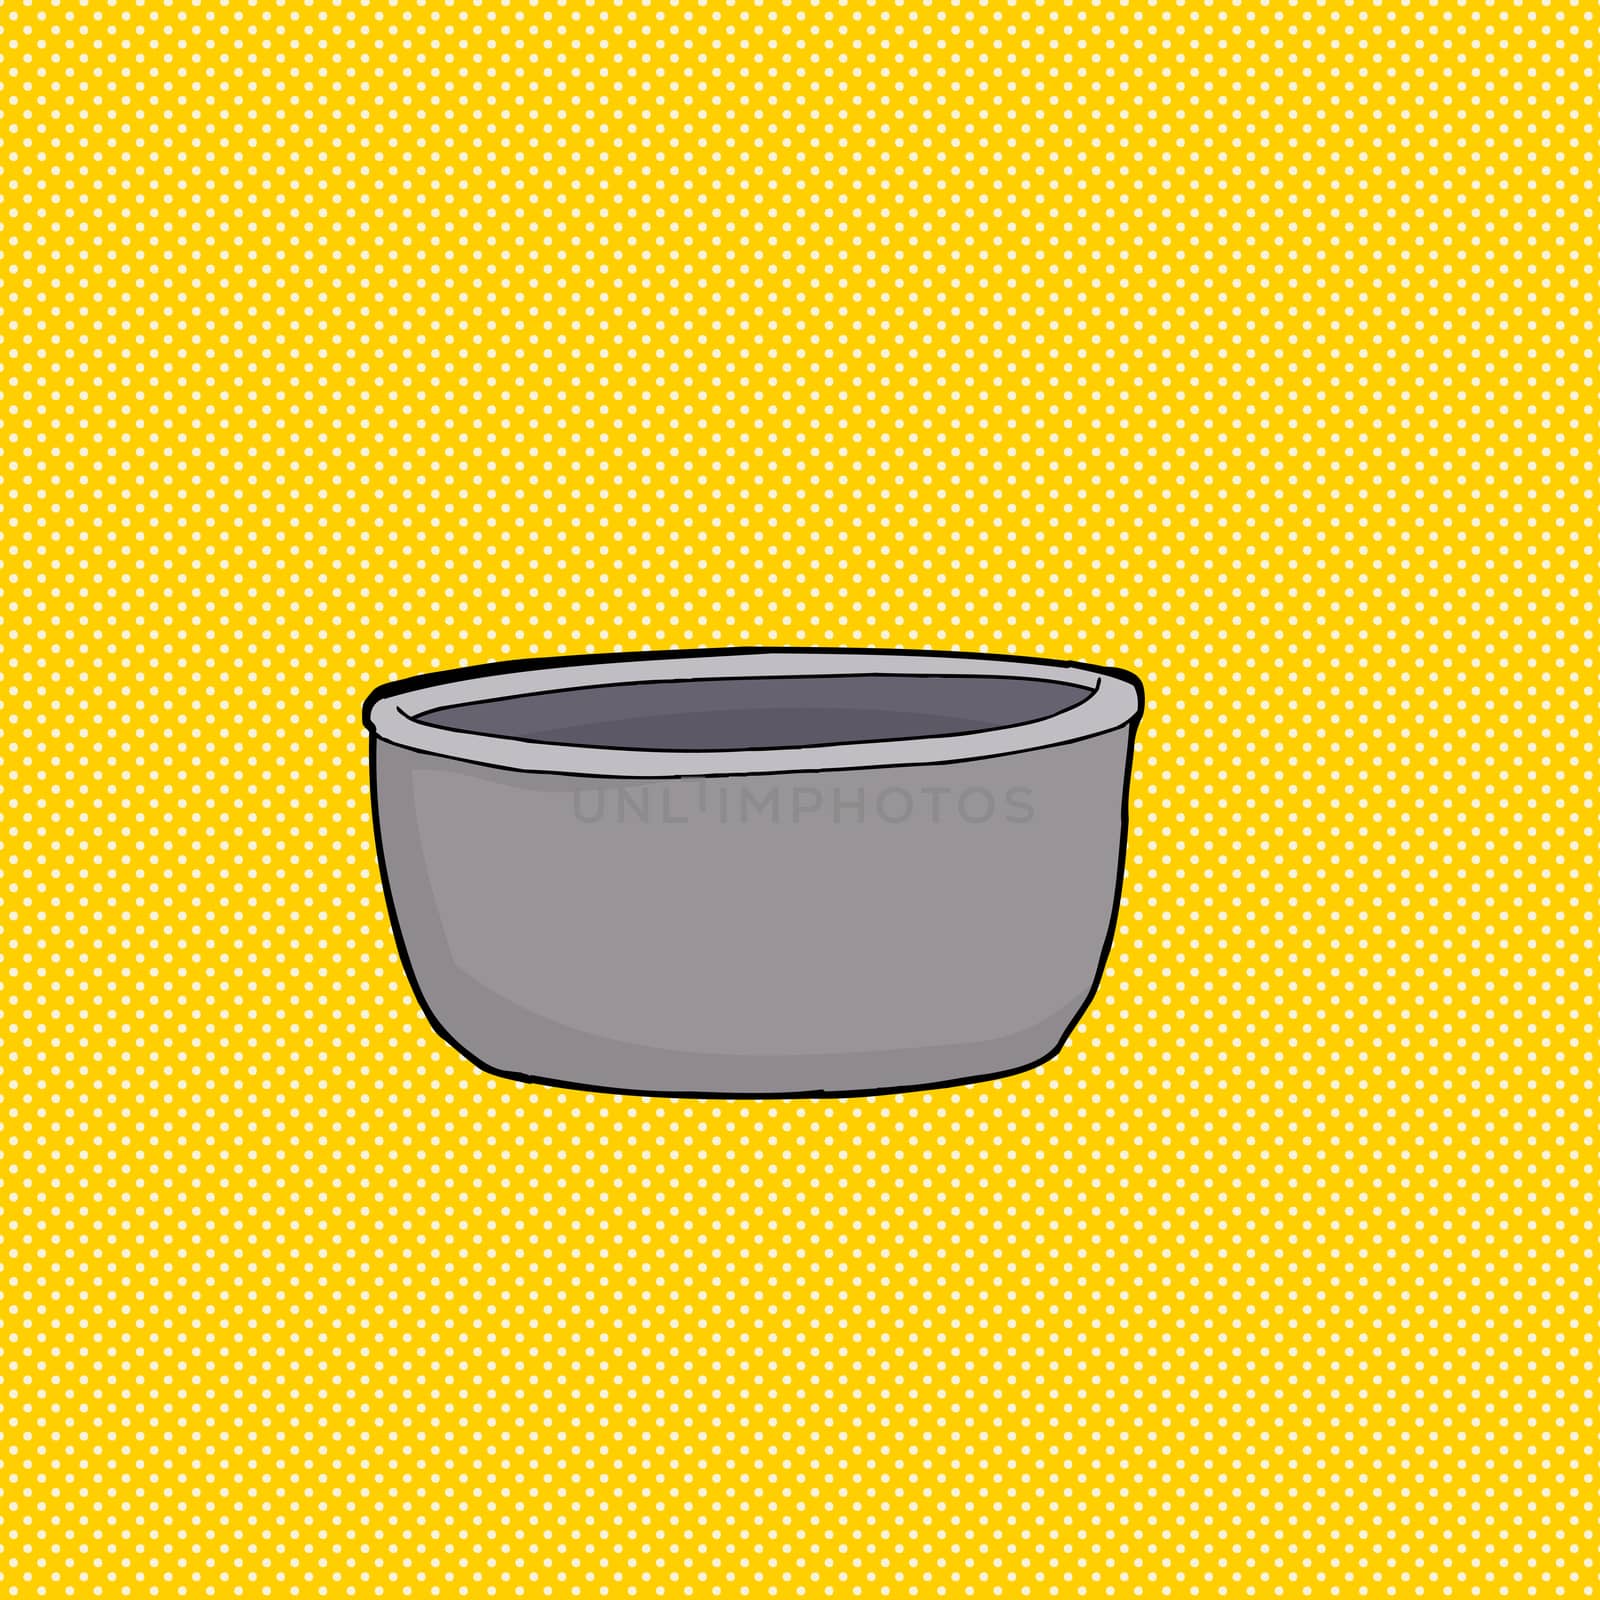 Empty Gray Bowl by TheBlackRhino